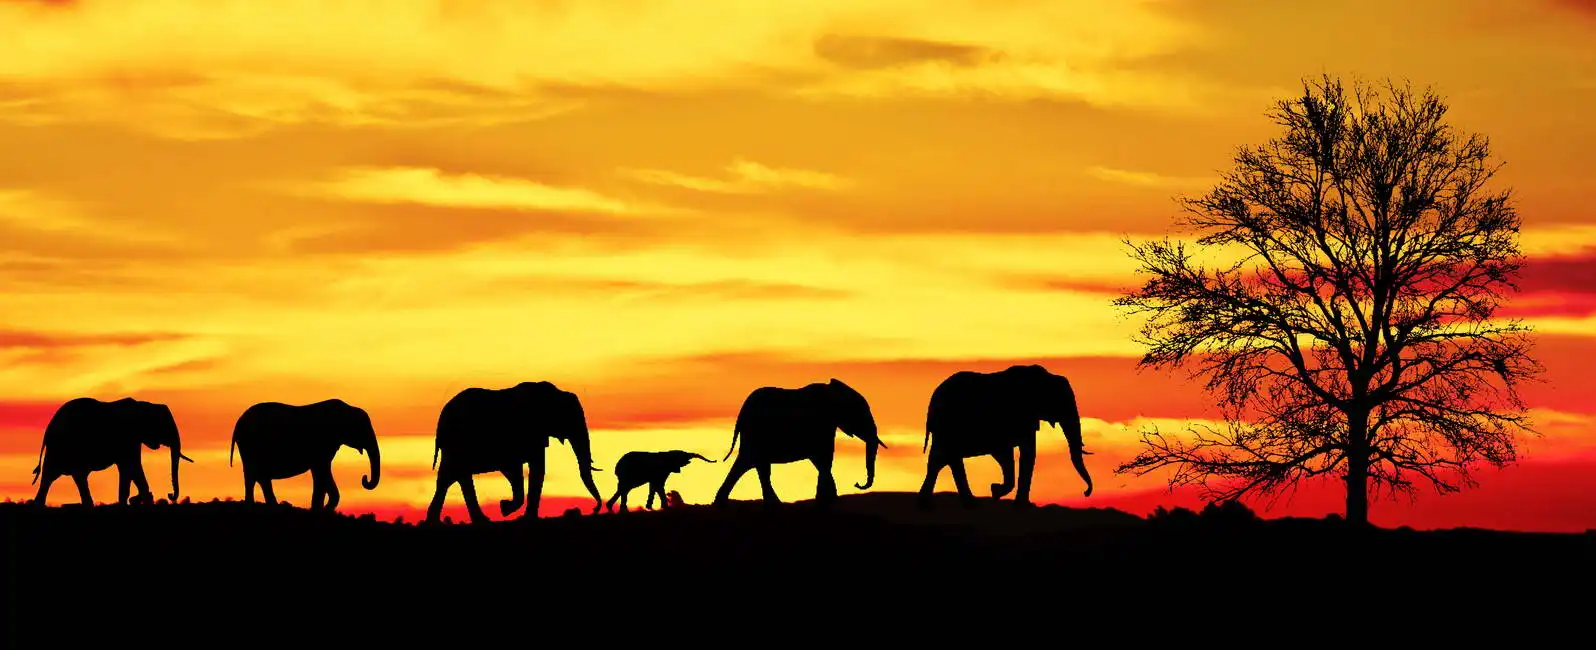 Neznámý: Stádo slonů